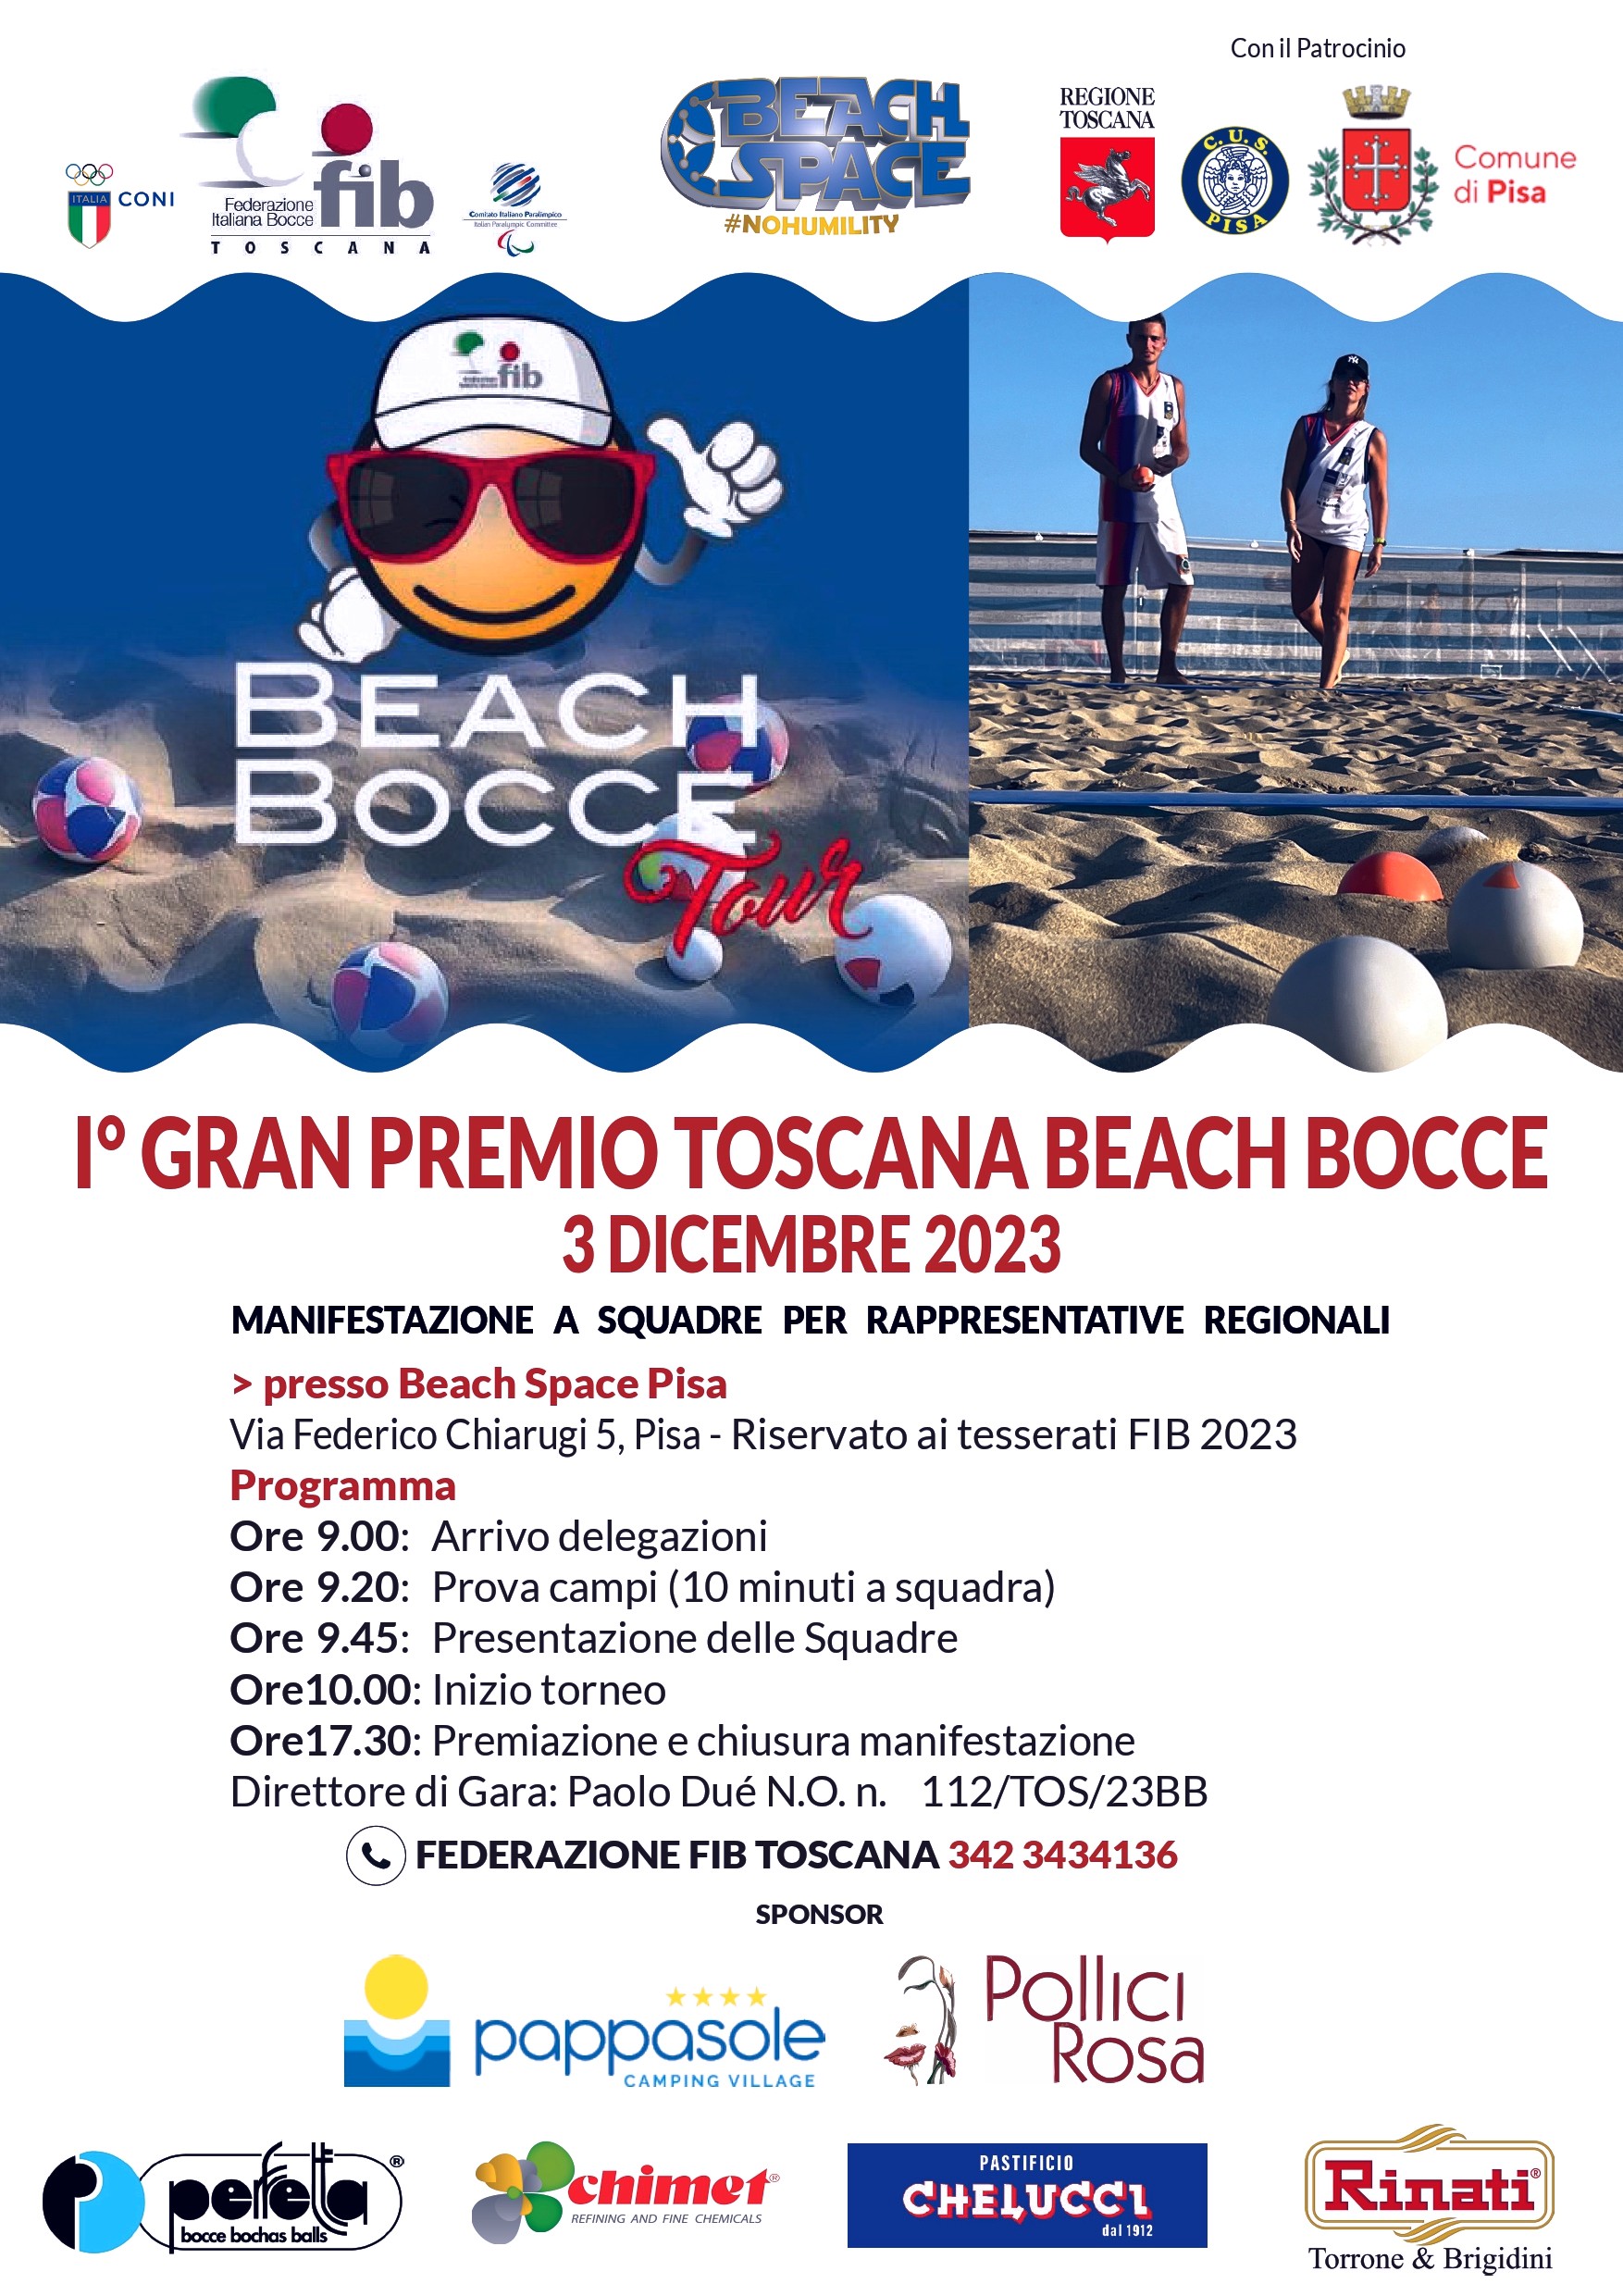 1 Gran Premio Toscana Beach Bocce a Squadre Manifesto